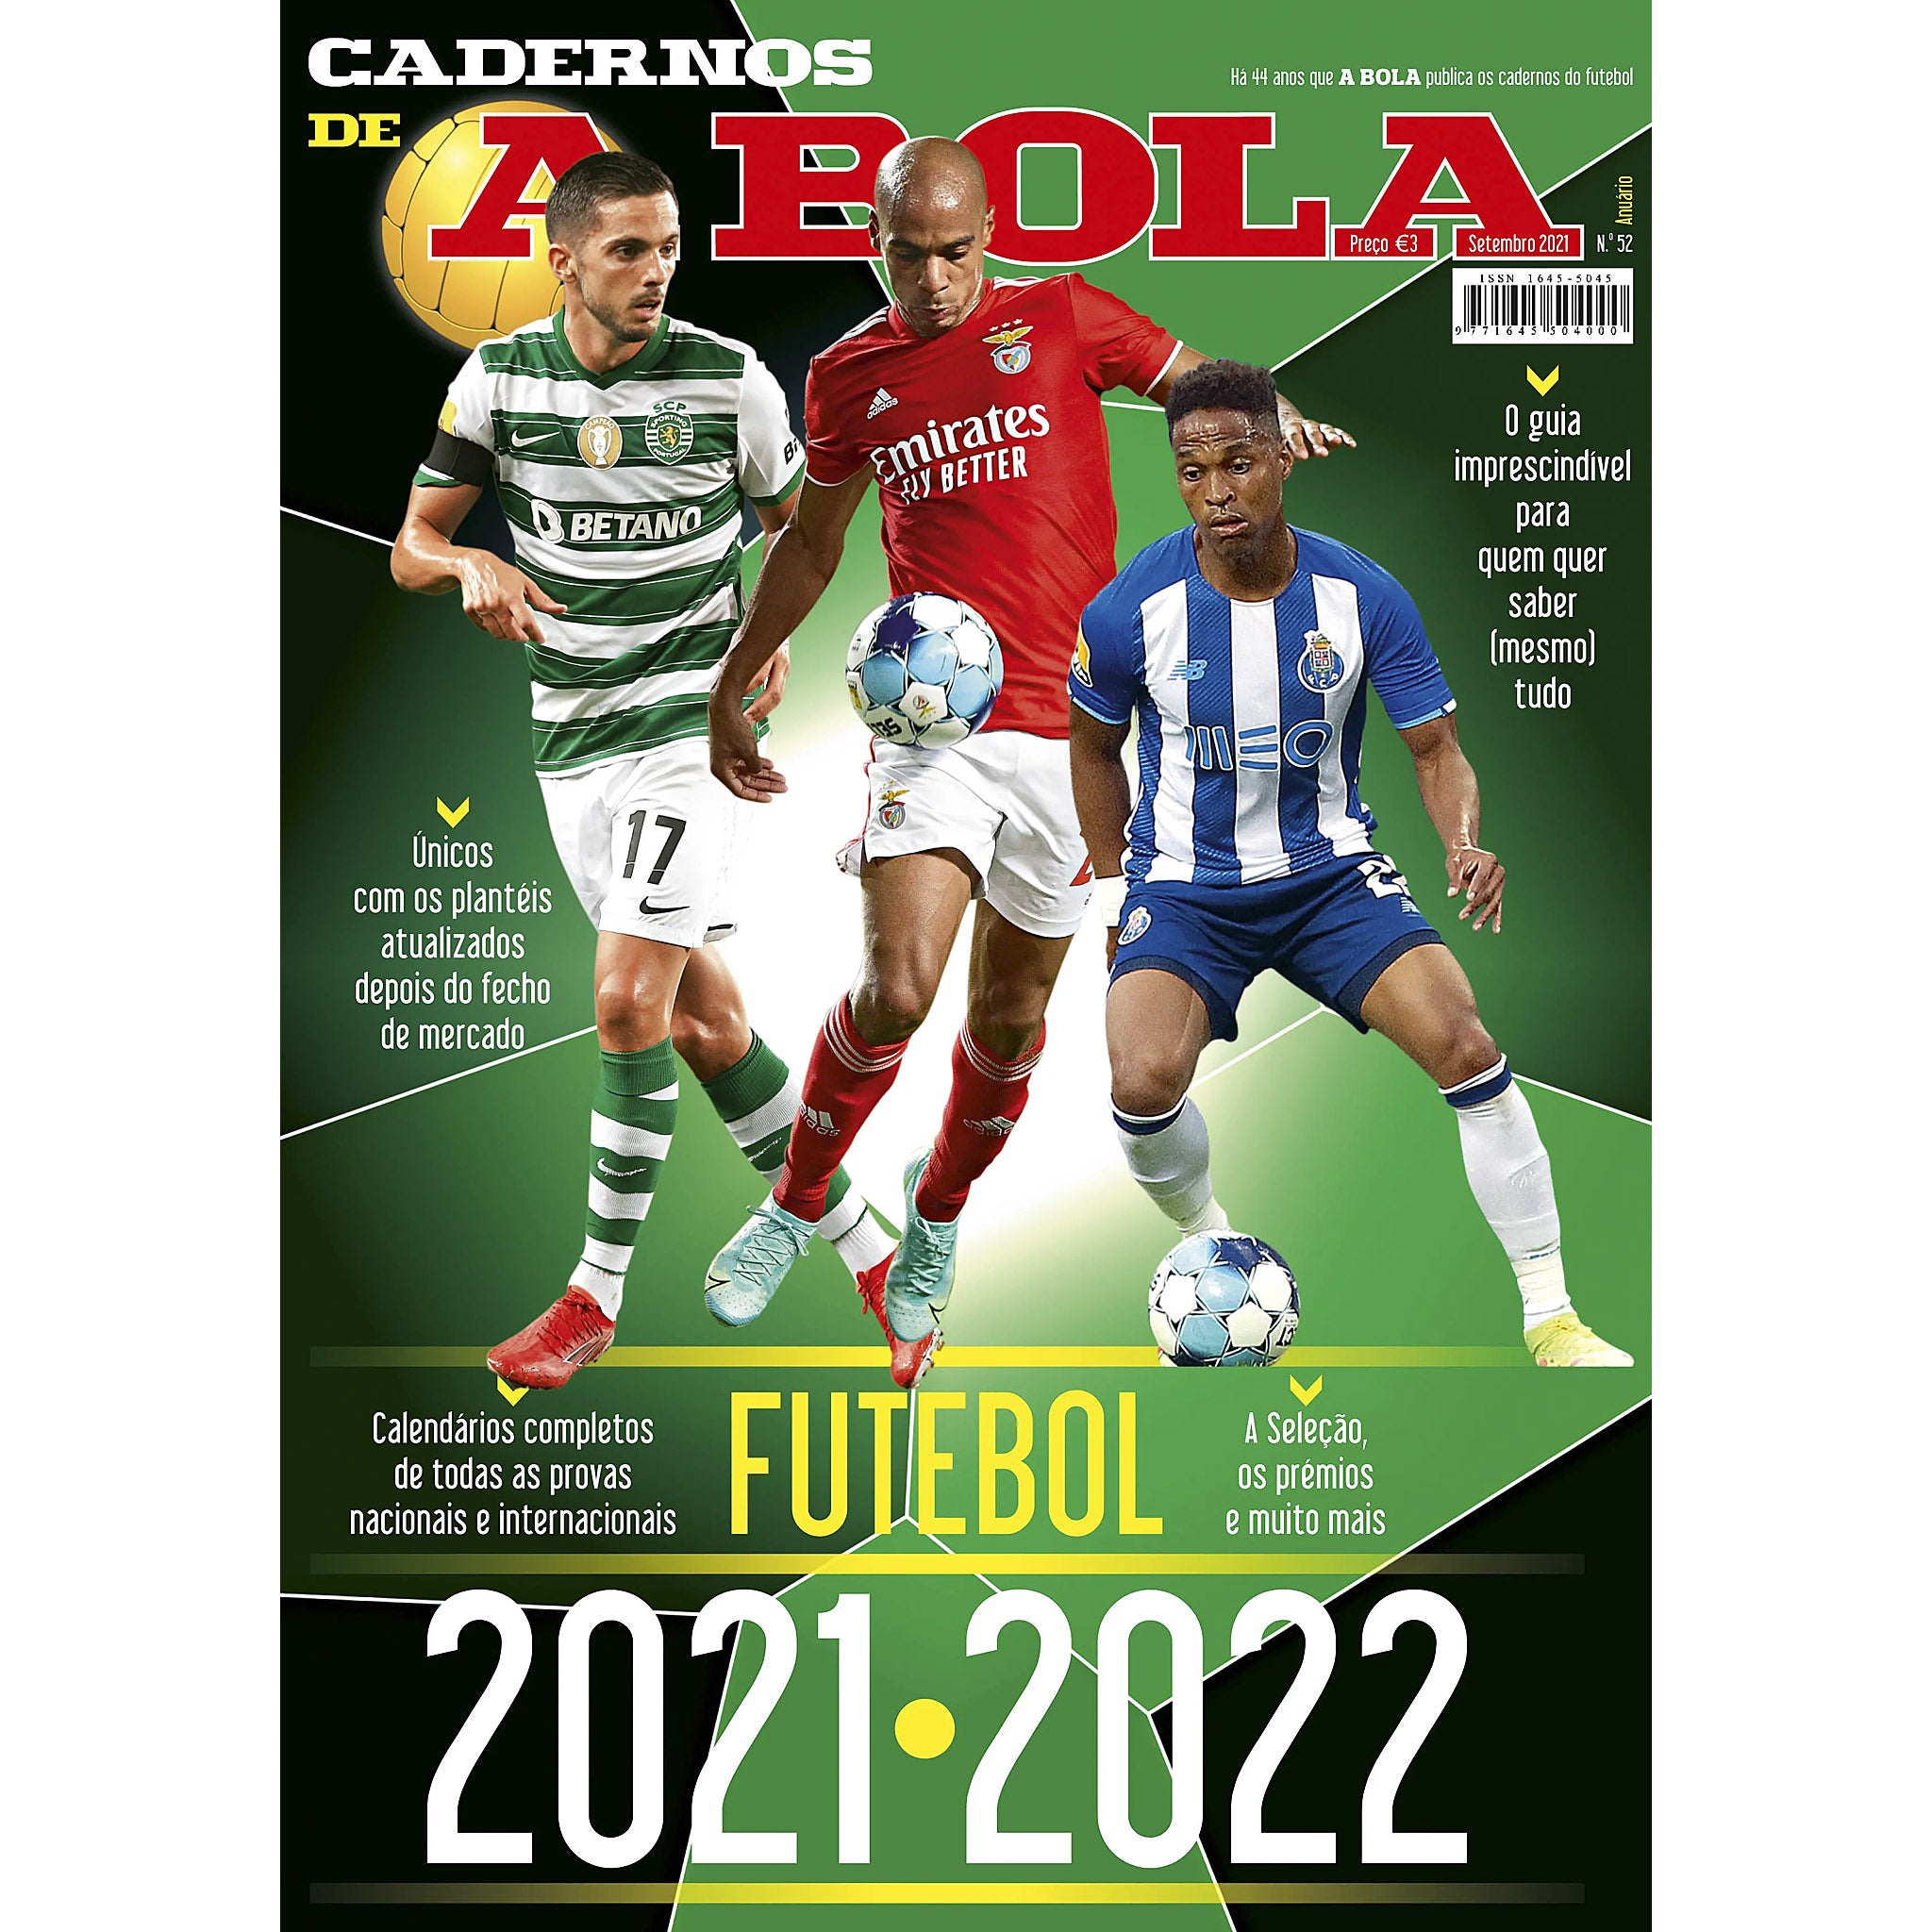 Cadernos de A Bola Futebol 2021/2022 (Portugal Season Preview)